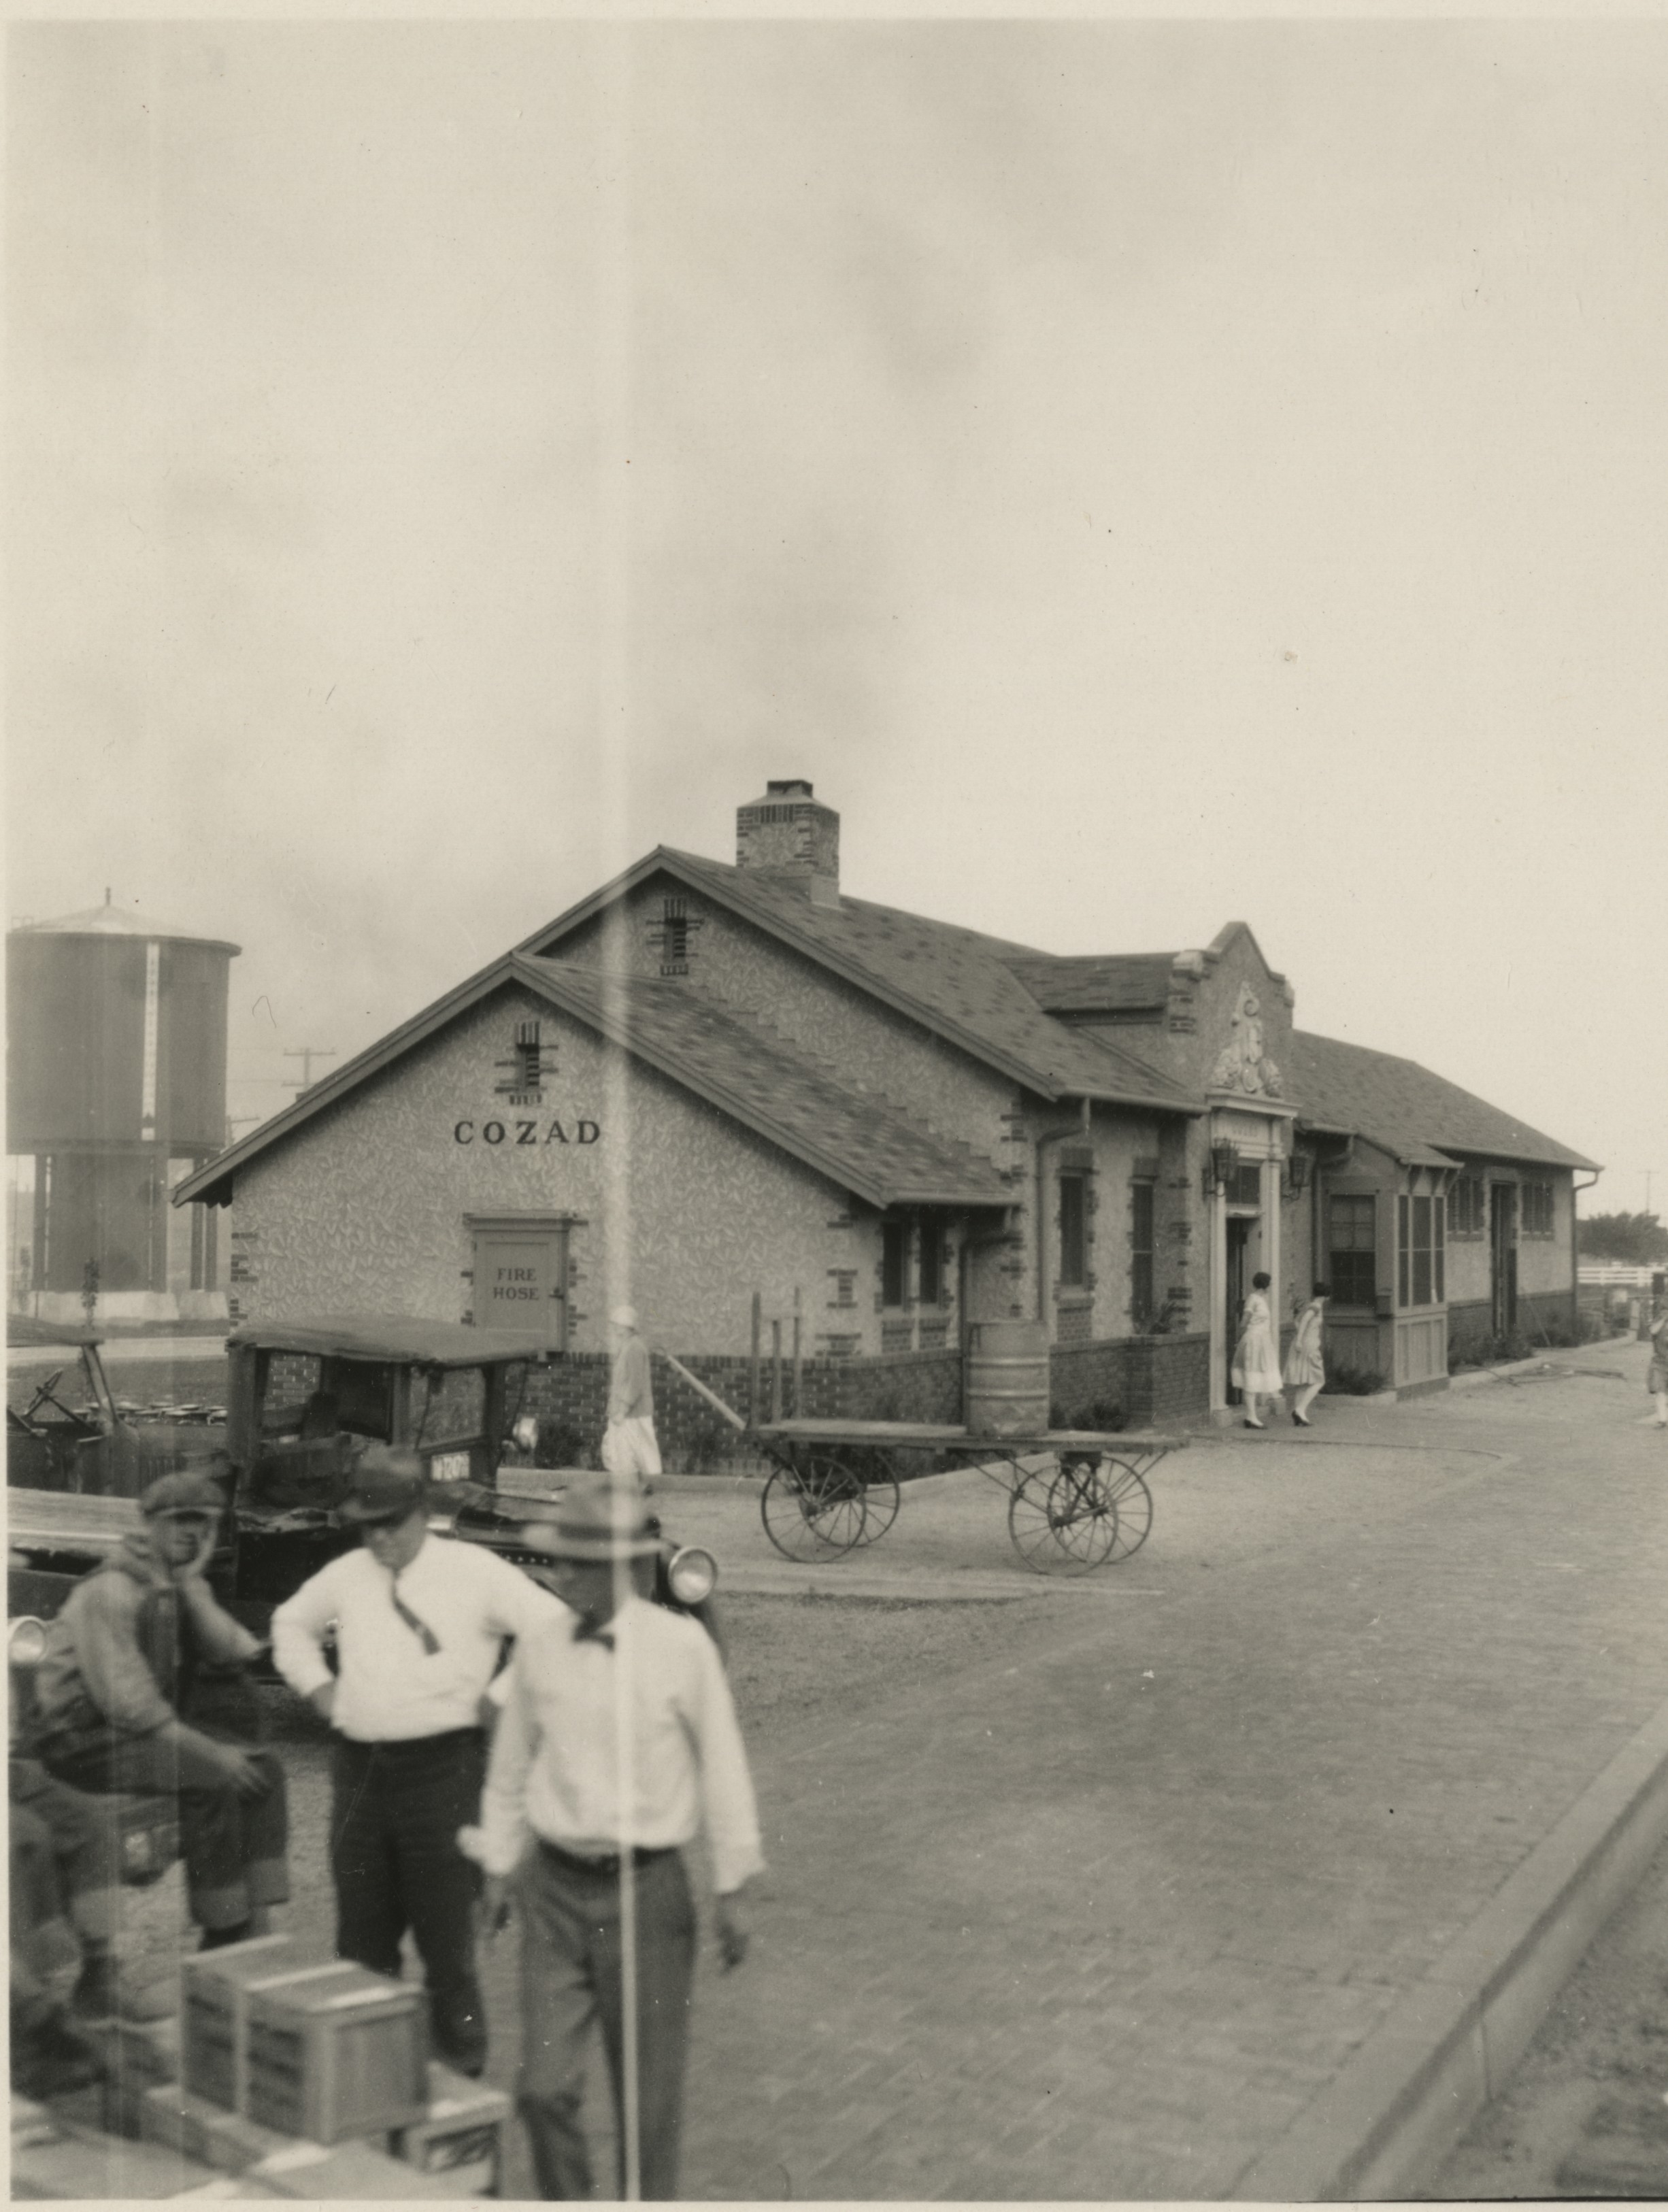 Busy train station in Cozad, Nebraska c 1910